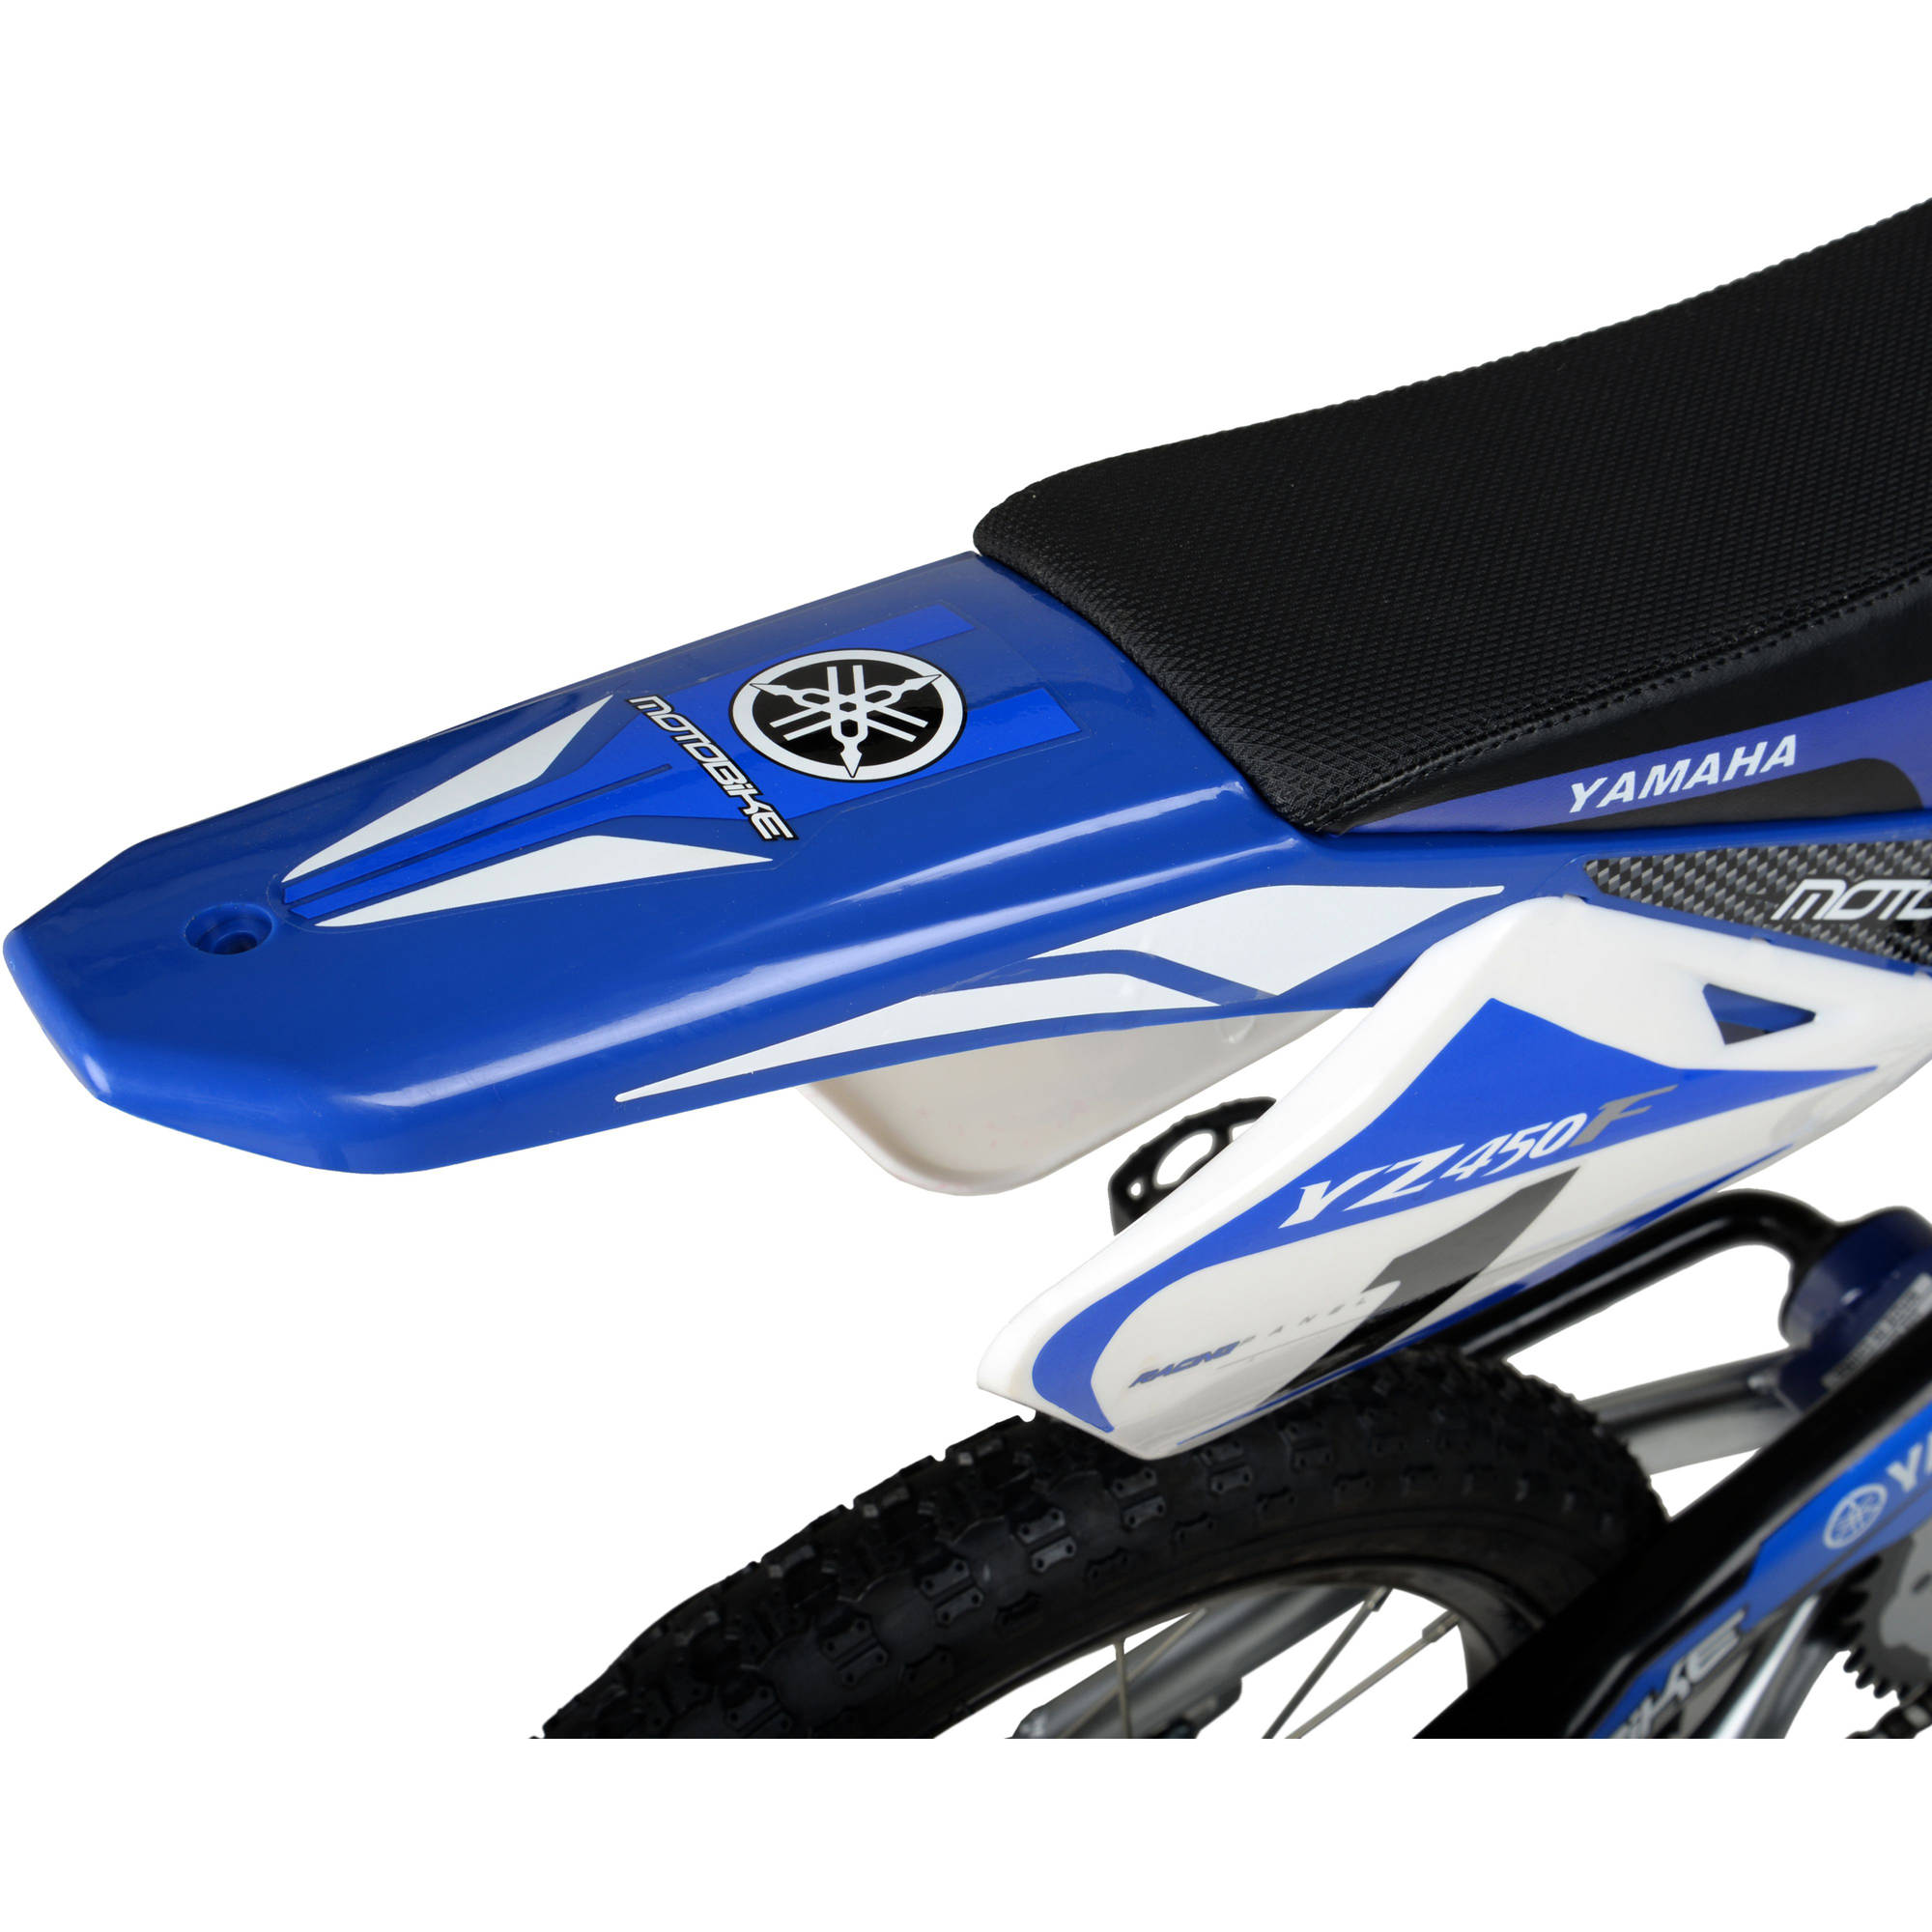 Yamaha 16" Moto BMX Boys Bike, Blue - image 4 of 6